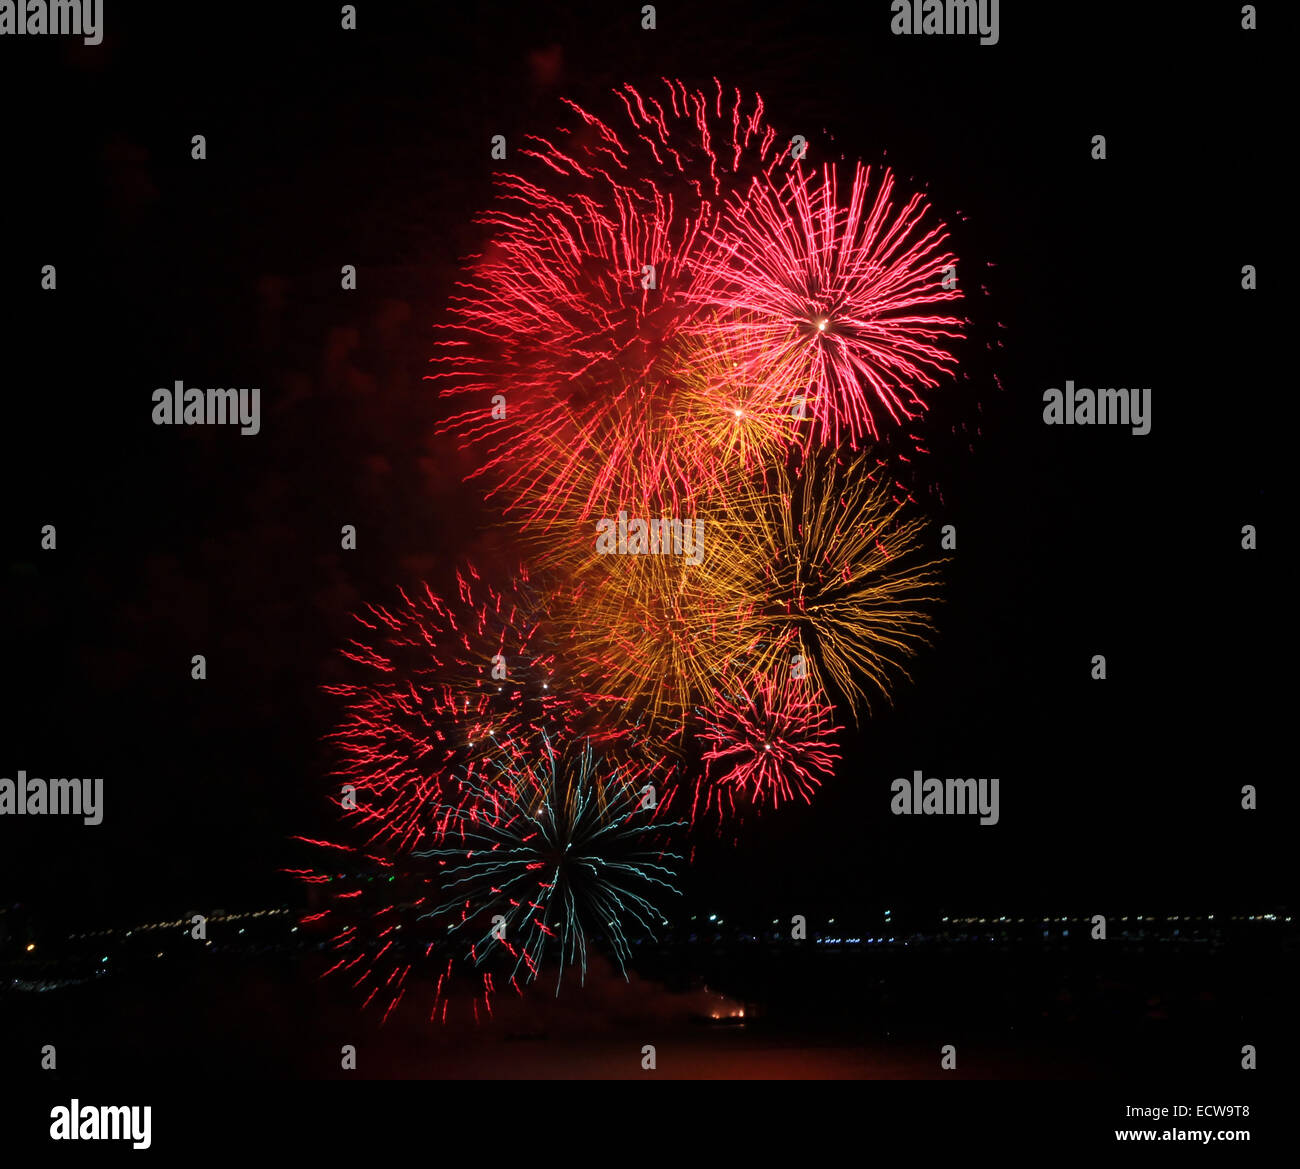 Close-up de un castillo de fuegos artificiales multicolores que simboliza el Año Nuevo, fiesta y pirotecnia Foto de stock